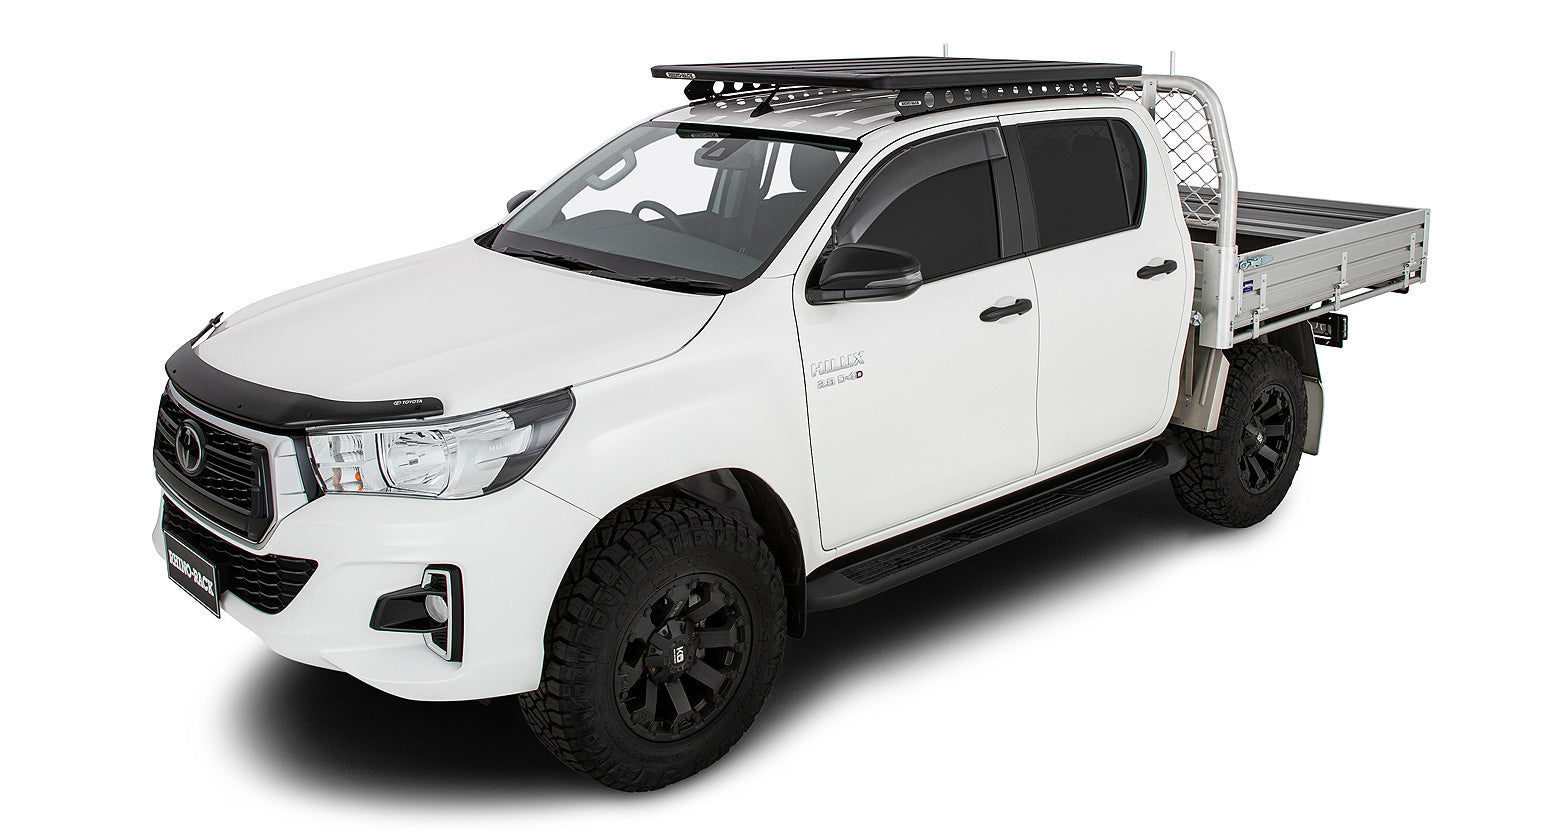 Ladeflächenabdeckung für Toyota Hilux Extra Kabine ( ab 2015-)